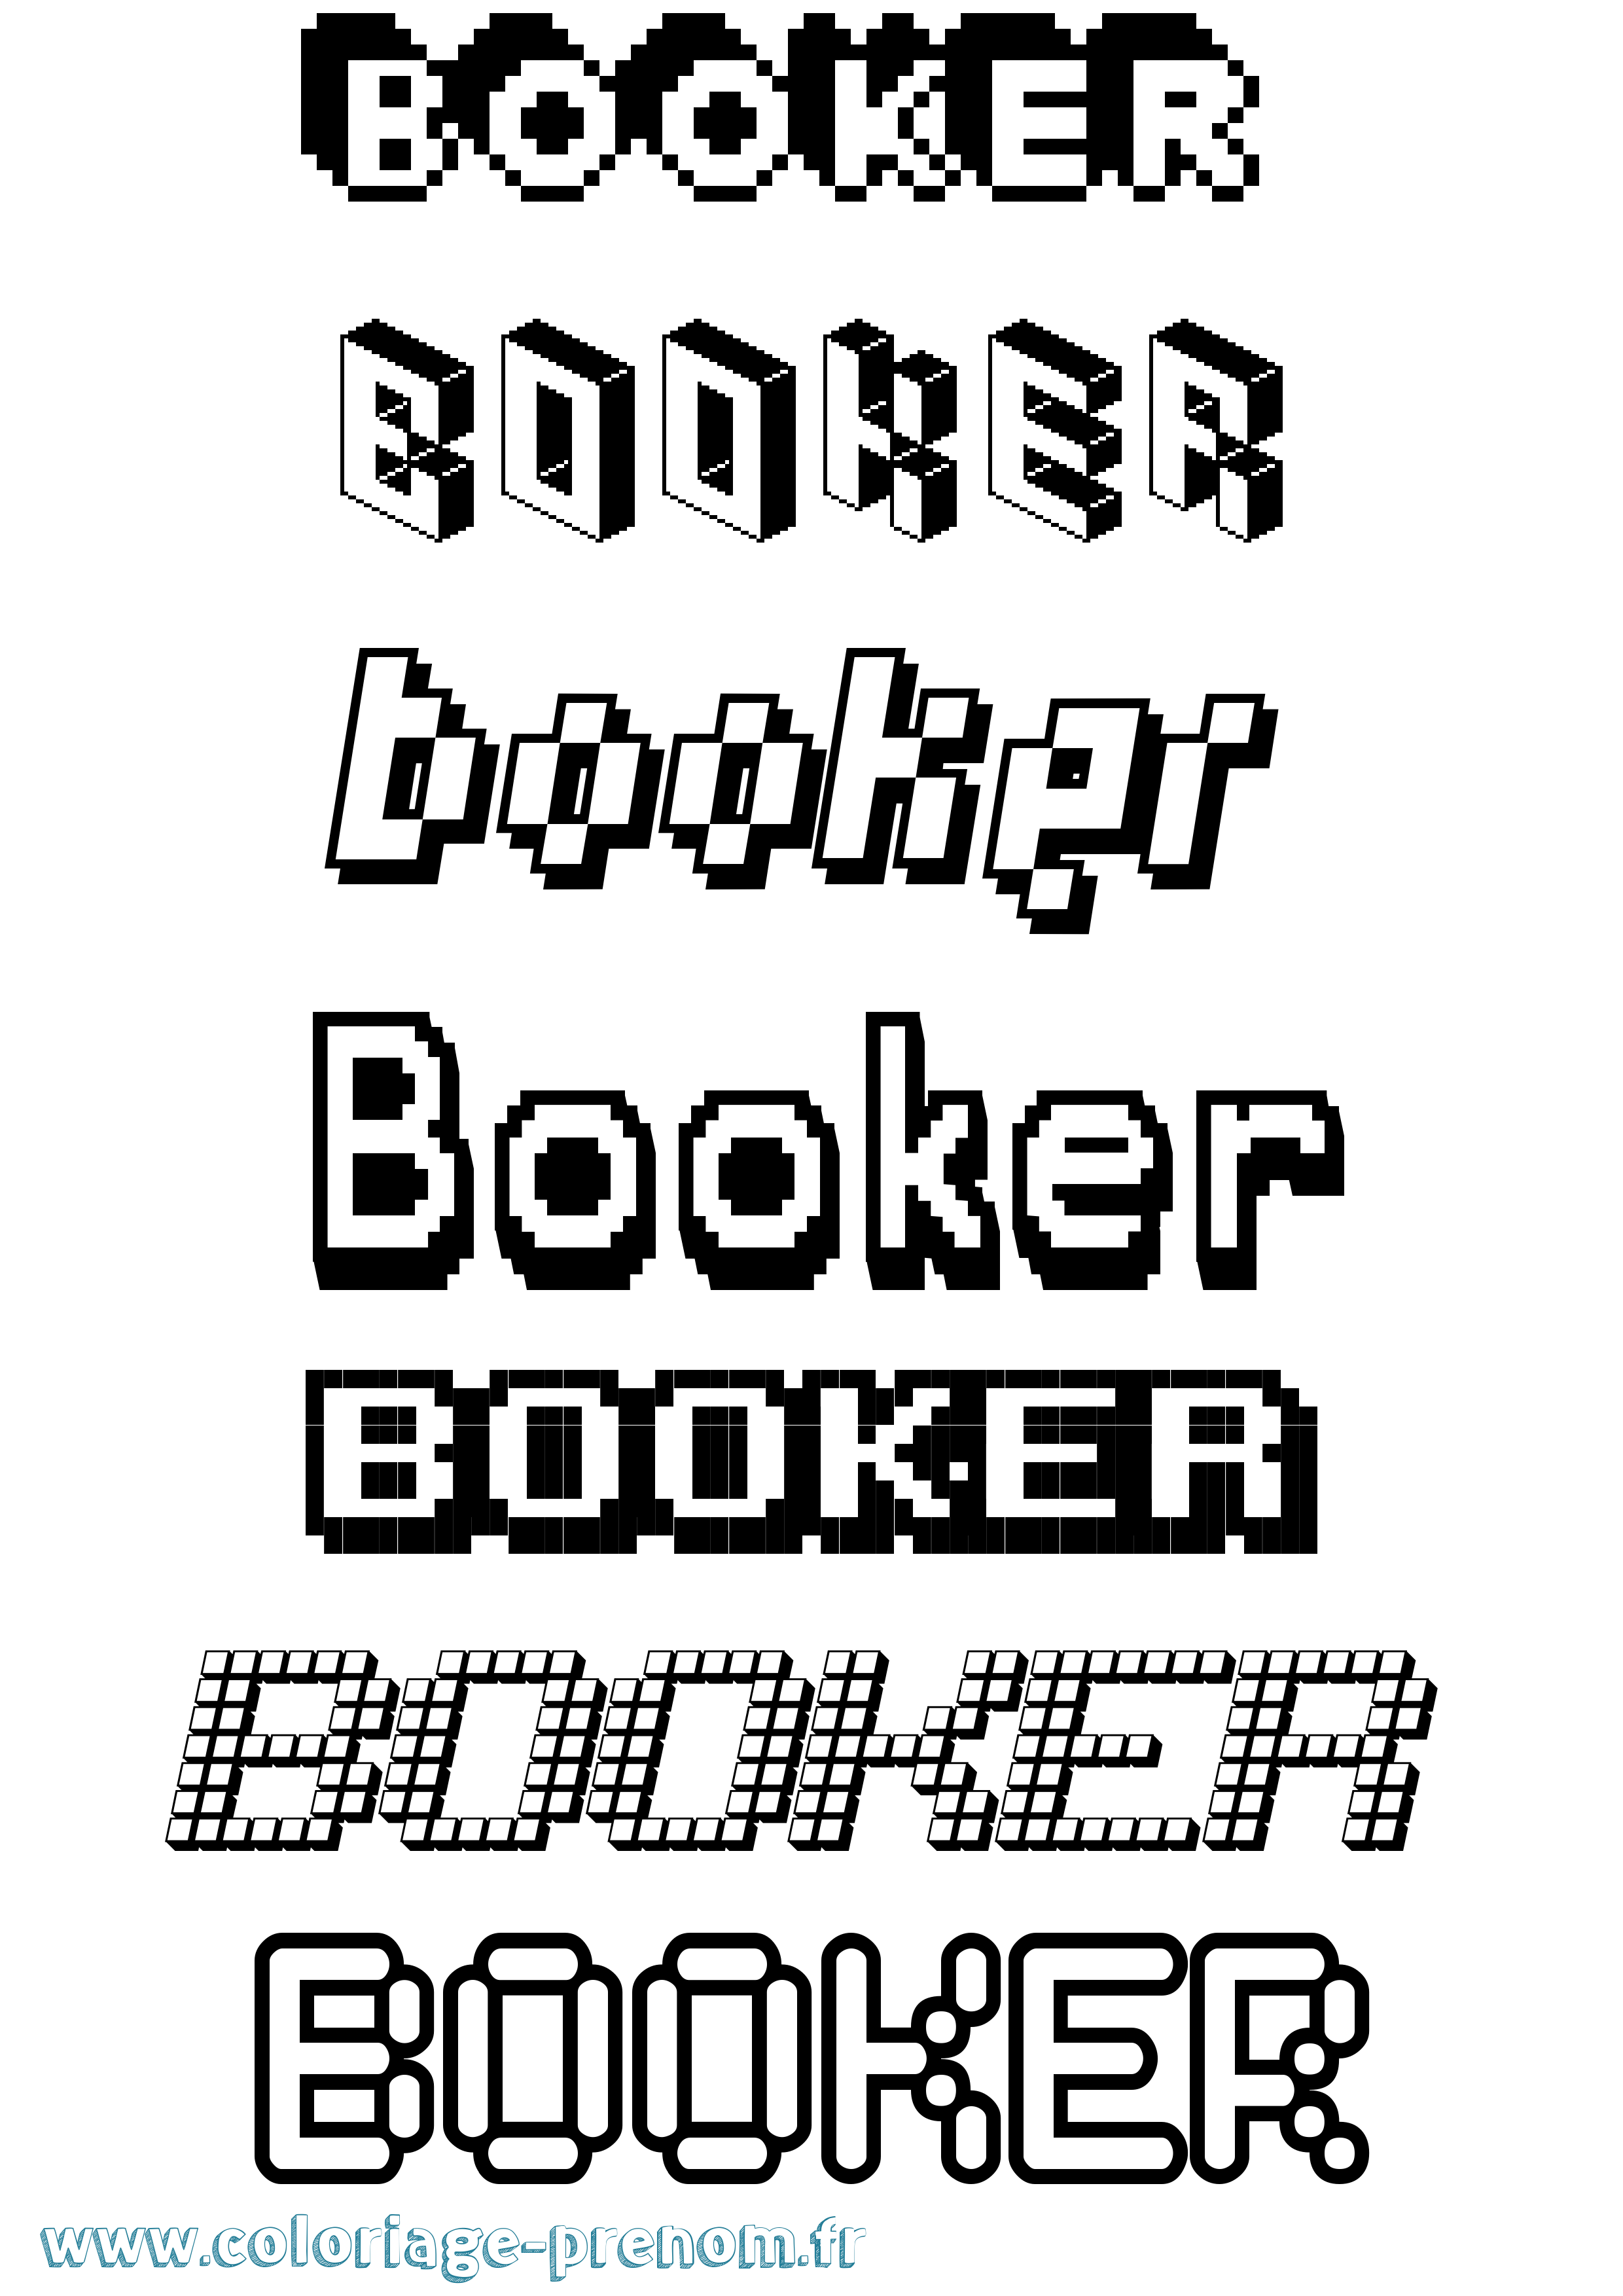 Coloriage prénom Booker Pixel